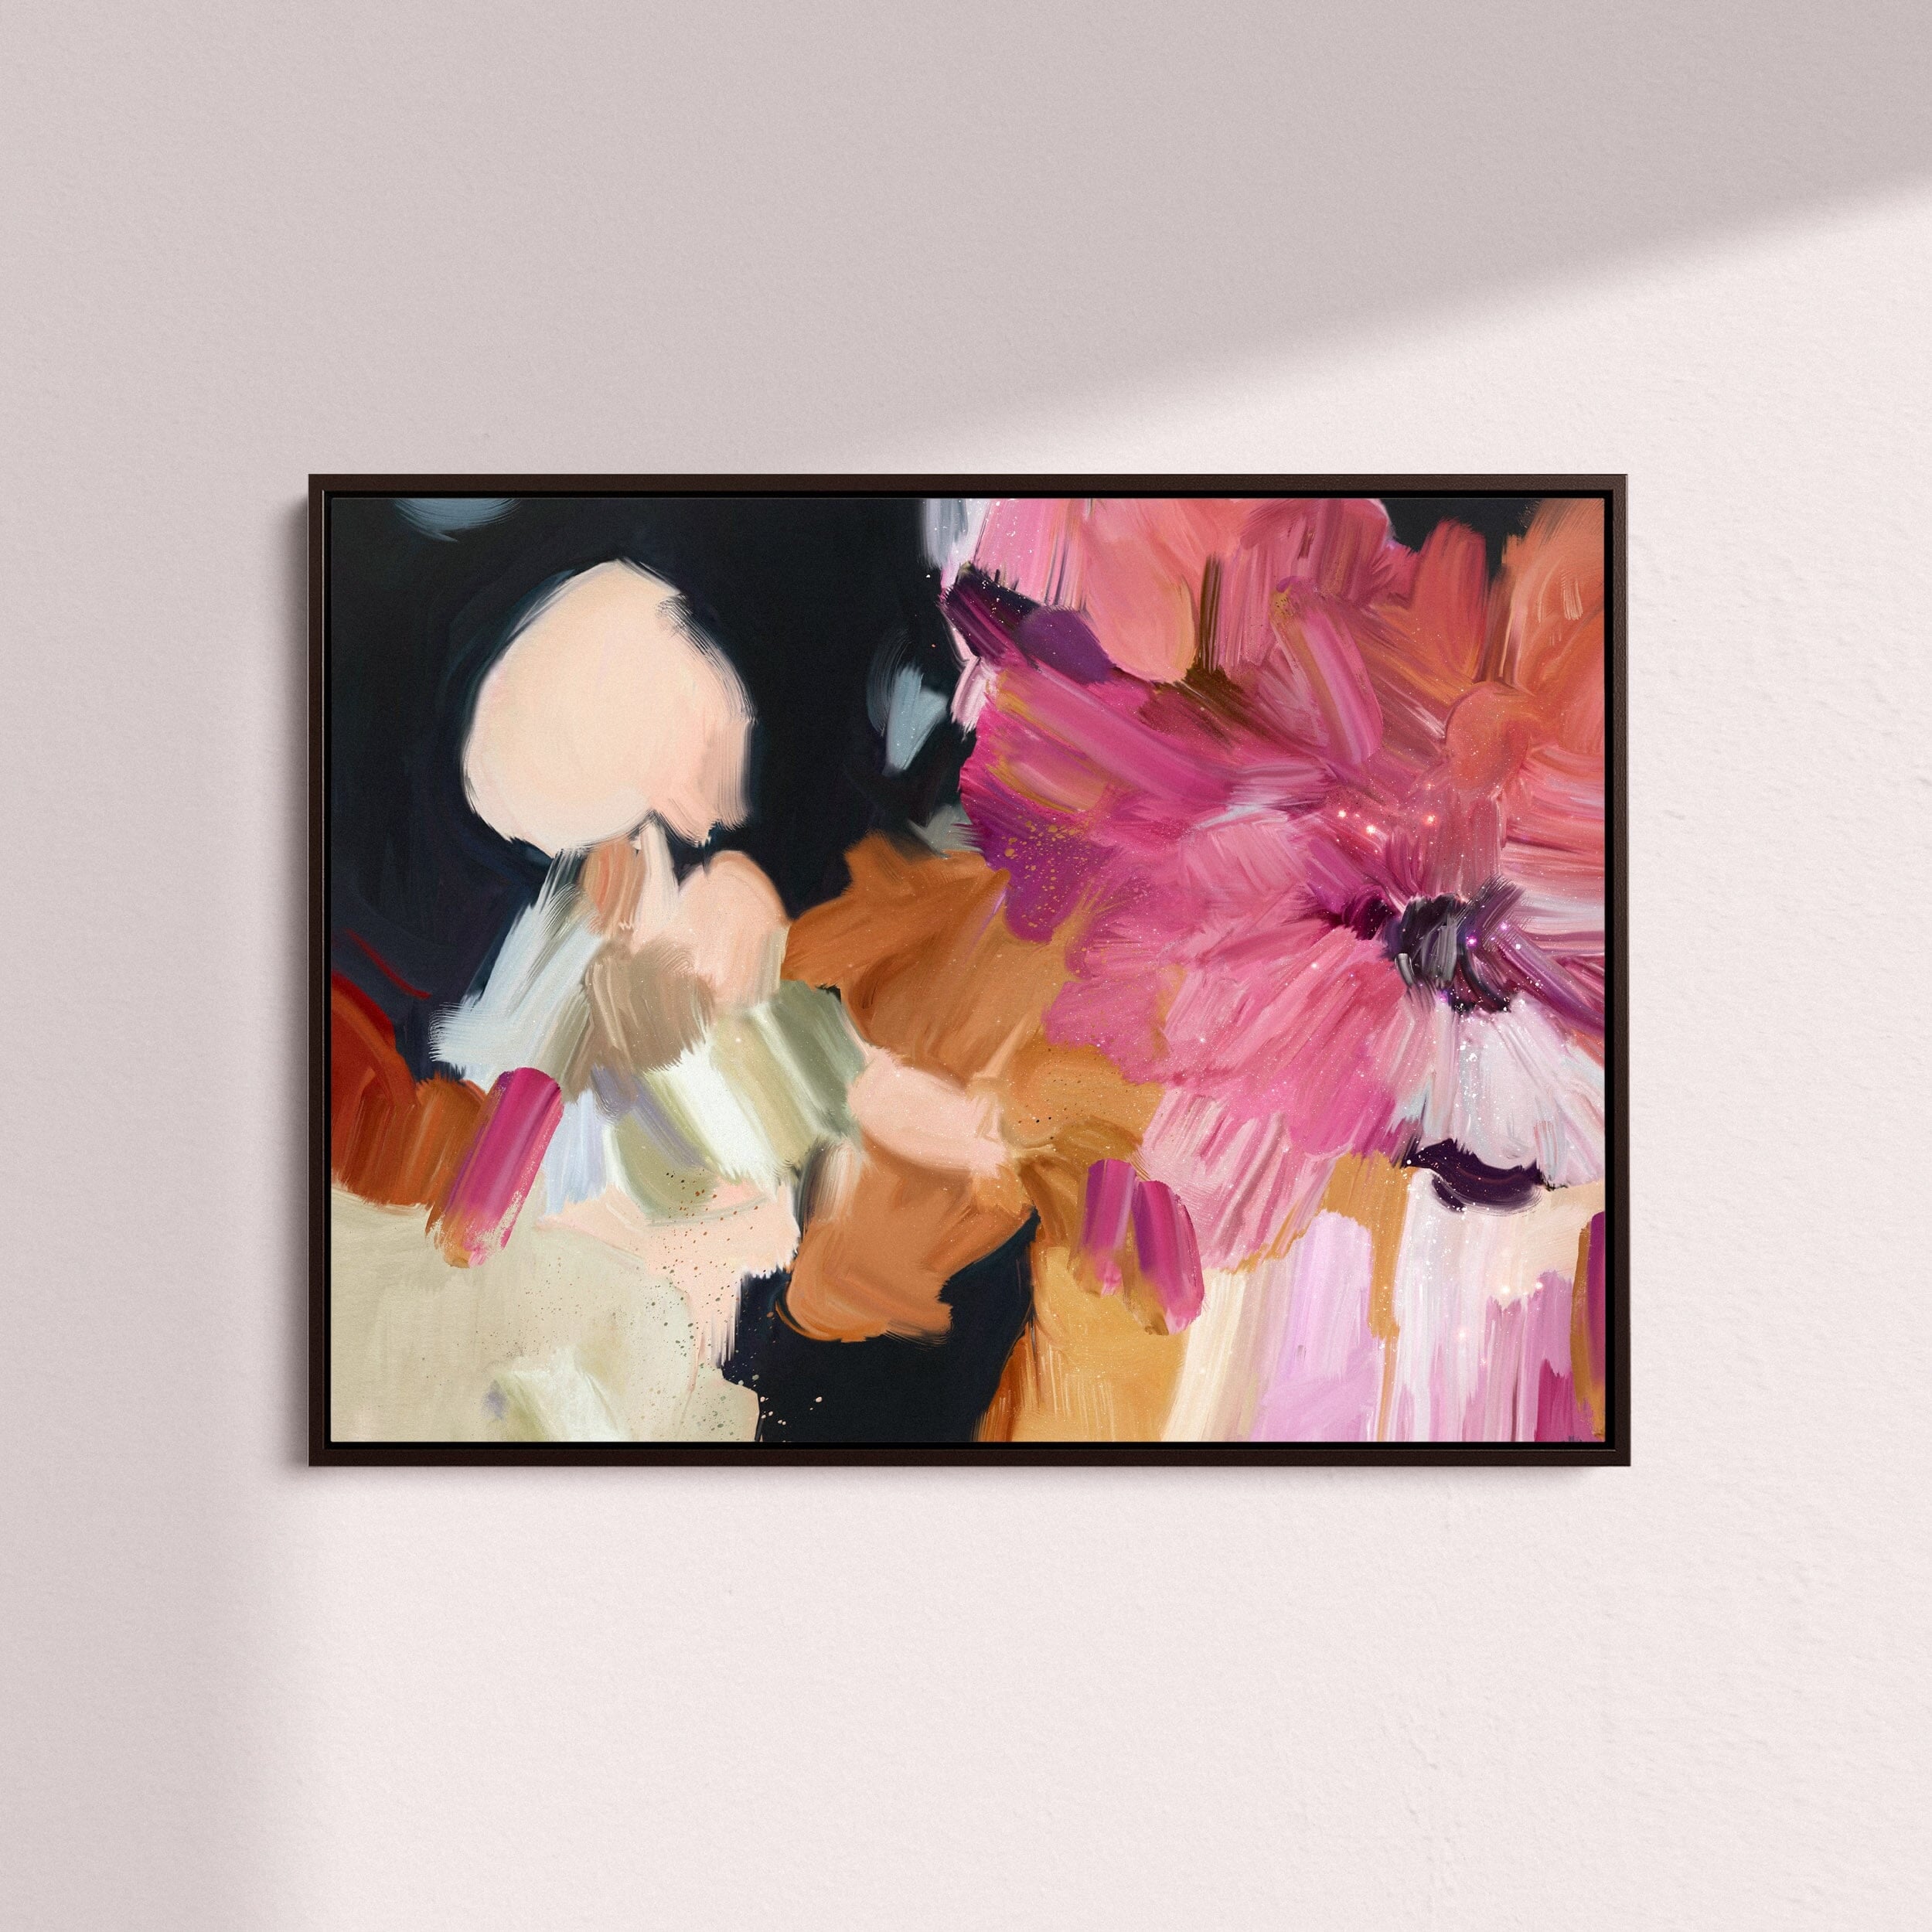 "Clara Auri No. 4" on Canvas - Landscape Canvas Wall Art Corinne Melanie Professionally Framed - Black S: 32x24in / 80x60cm 